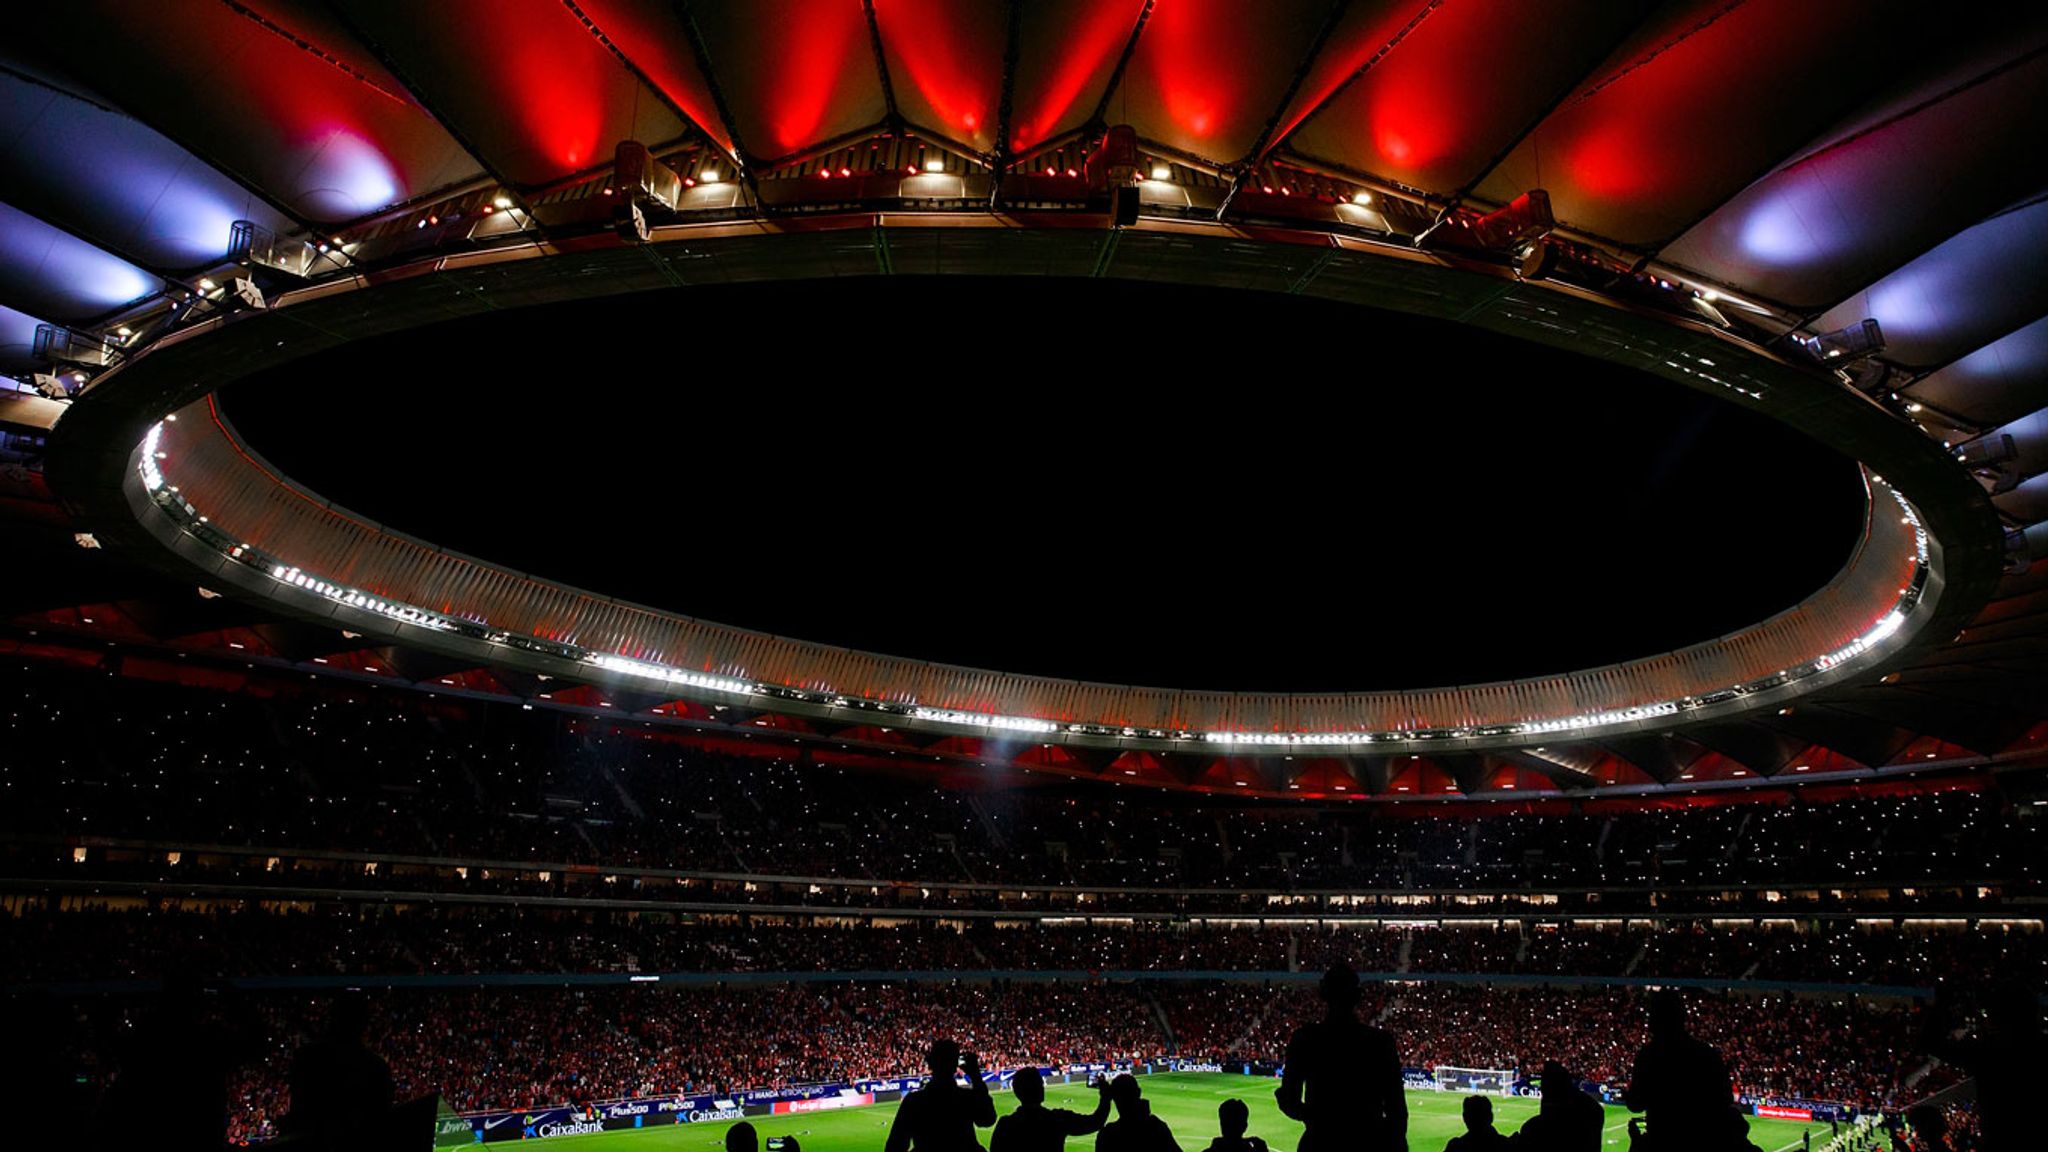 Финал какой стадион. Финал Лиги чемпионов УЕФА 2020. Финал Лиги чемпионов UEFA В Стамбуле!. Олимпийский стадион Ататюрка.